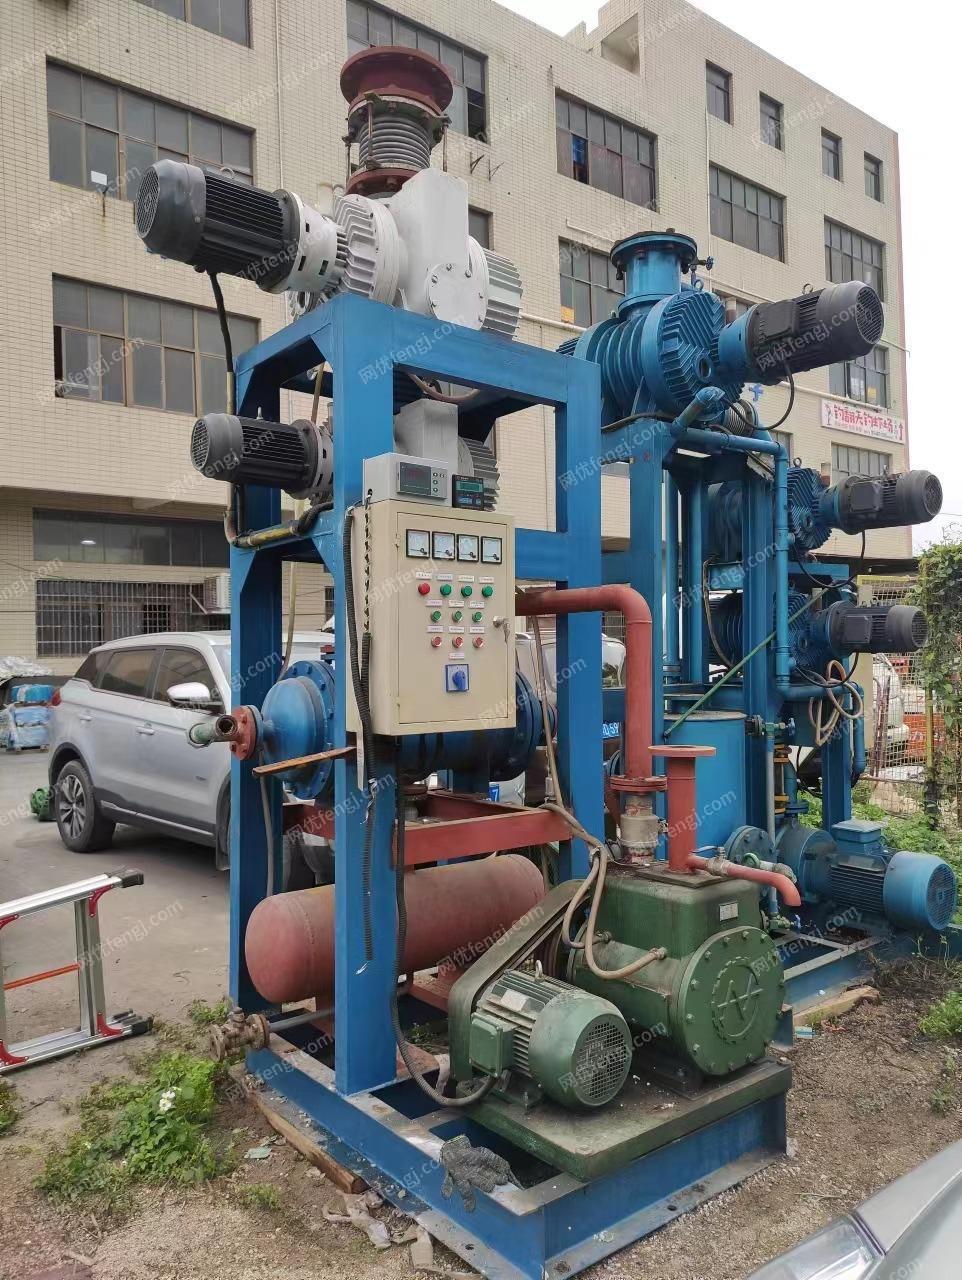 出售ZJY-300/ZJY-600闲置罗茨循环泵机组和罗茨旋片泵机组各一套